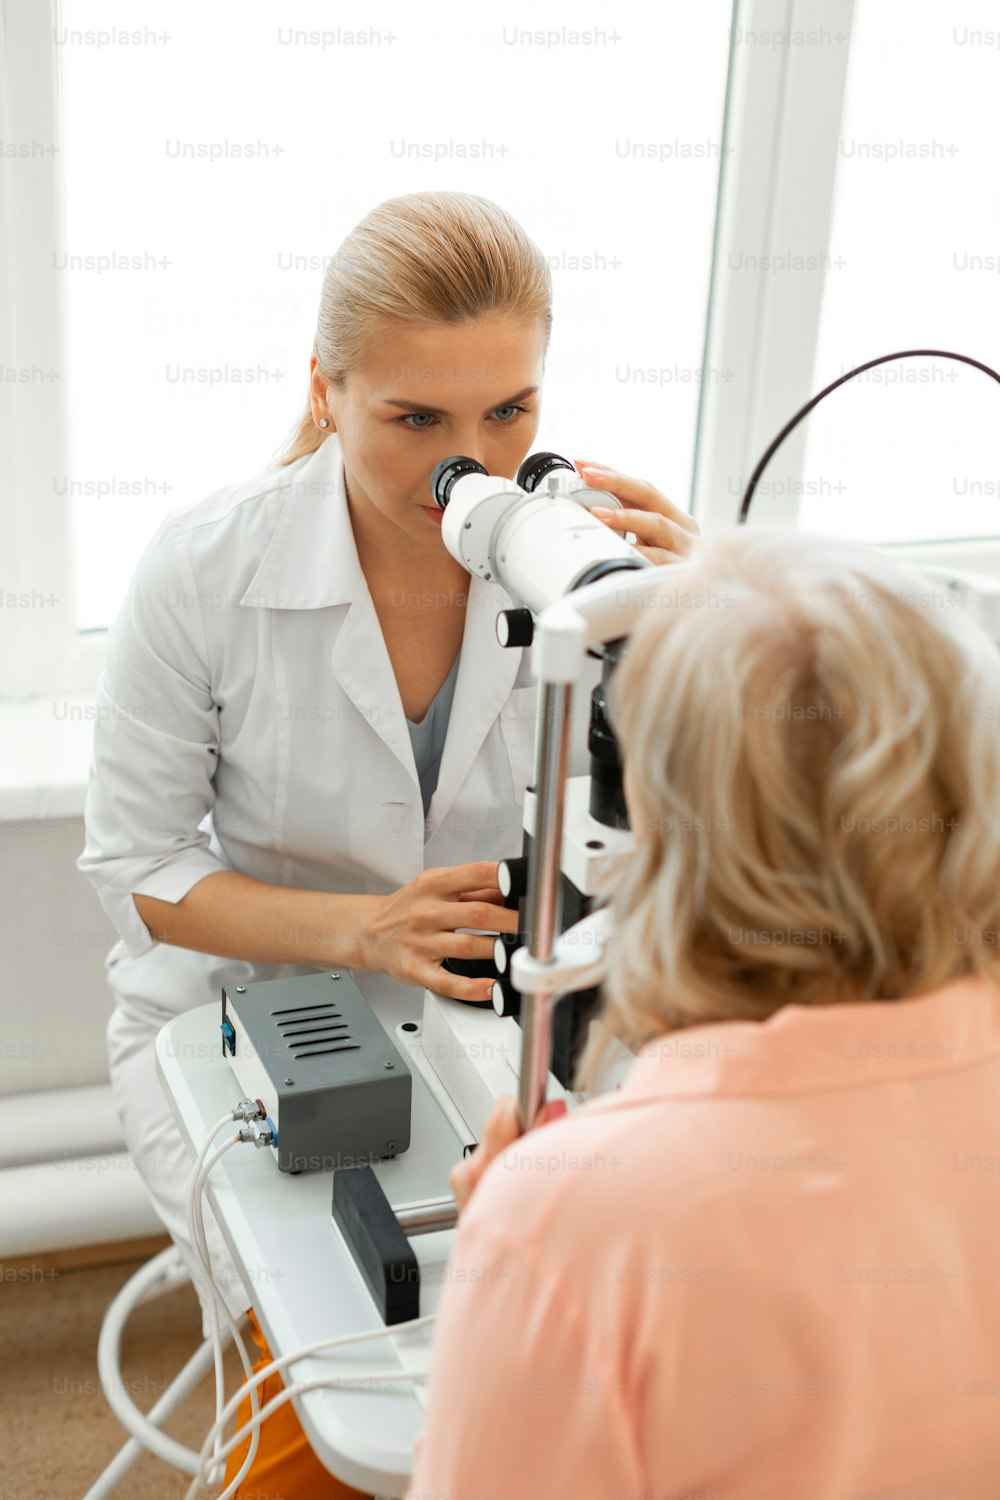 환자와 함께 일하기. 쌍안경을 들여다보며 금발을 묶은 세심한 의사가 환자의 눈 상태를 검사하고 있다